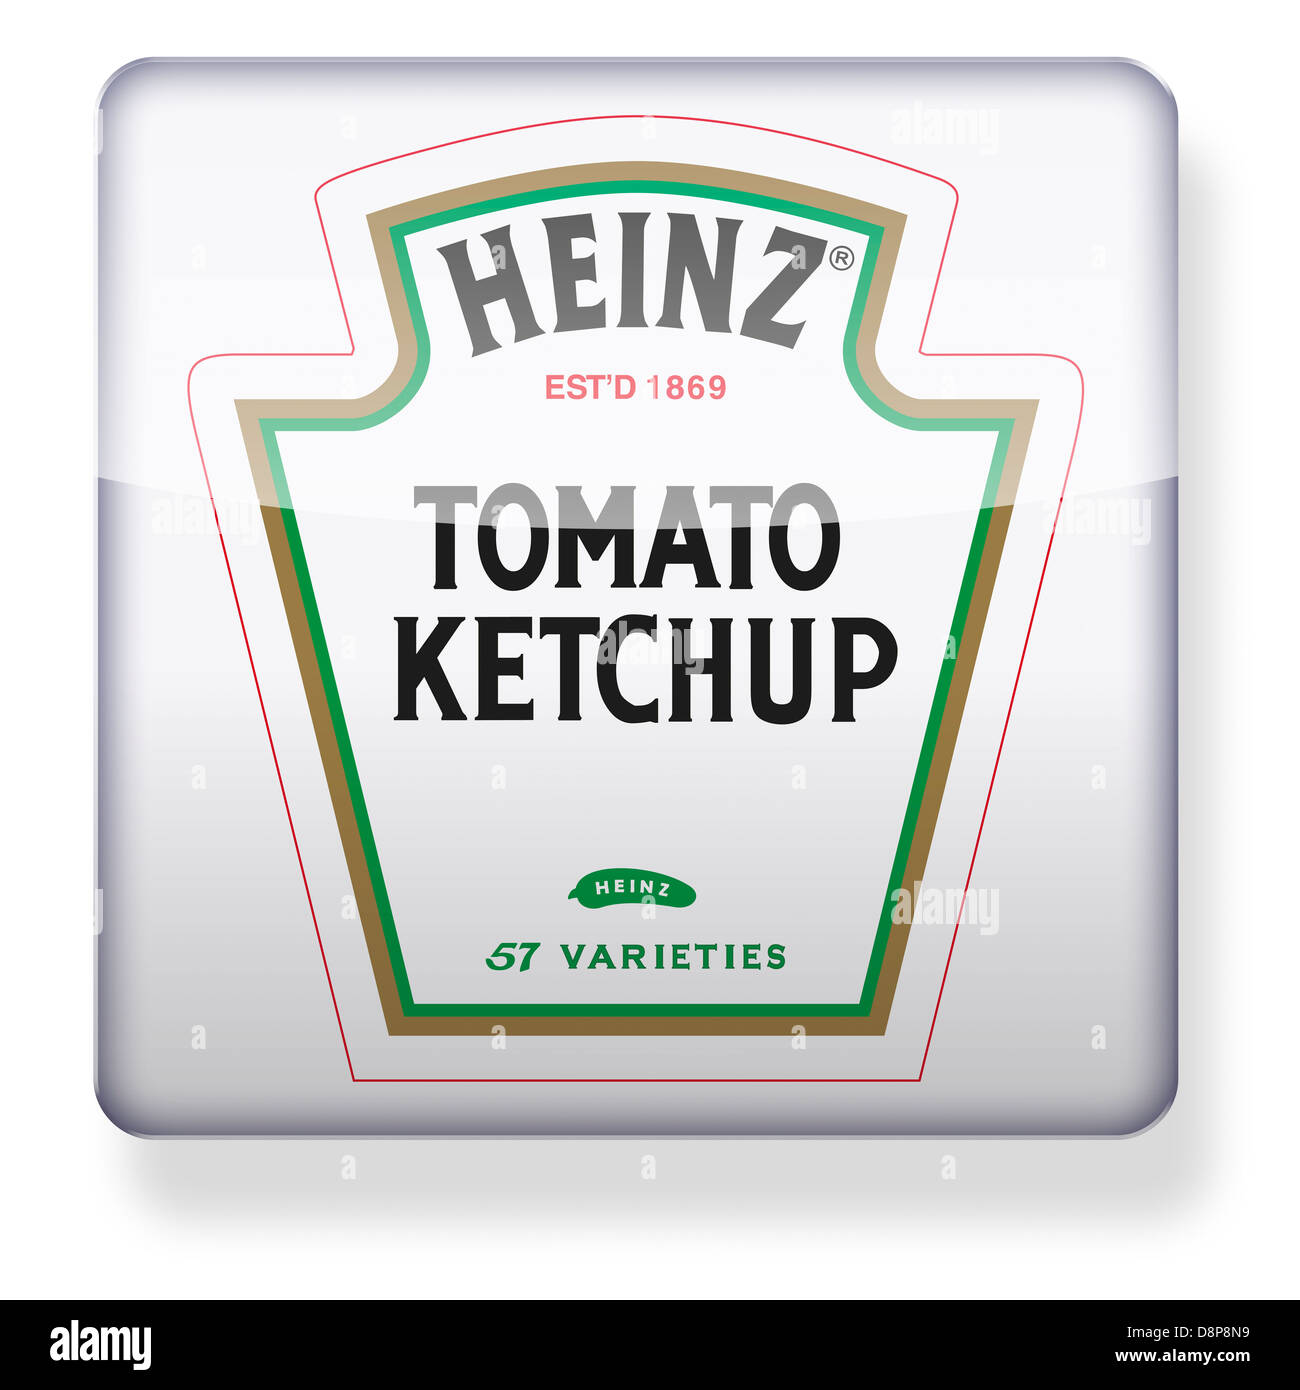 La salsa de tomate ketchup Heinz logotipo como el icono de una aplicación. Trazado de recorte incluido. Foto de stock